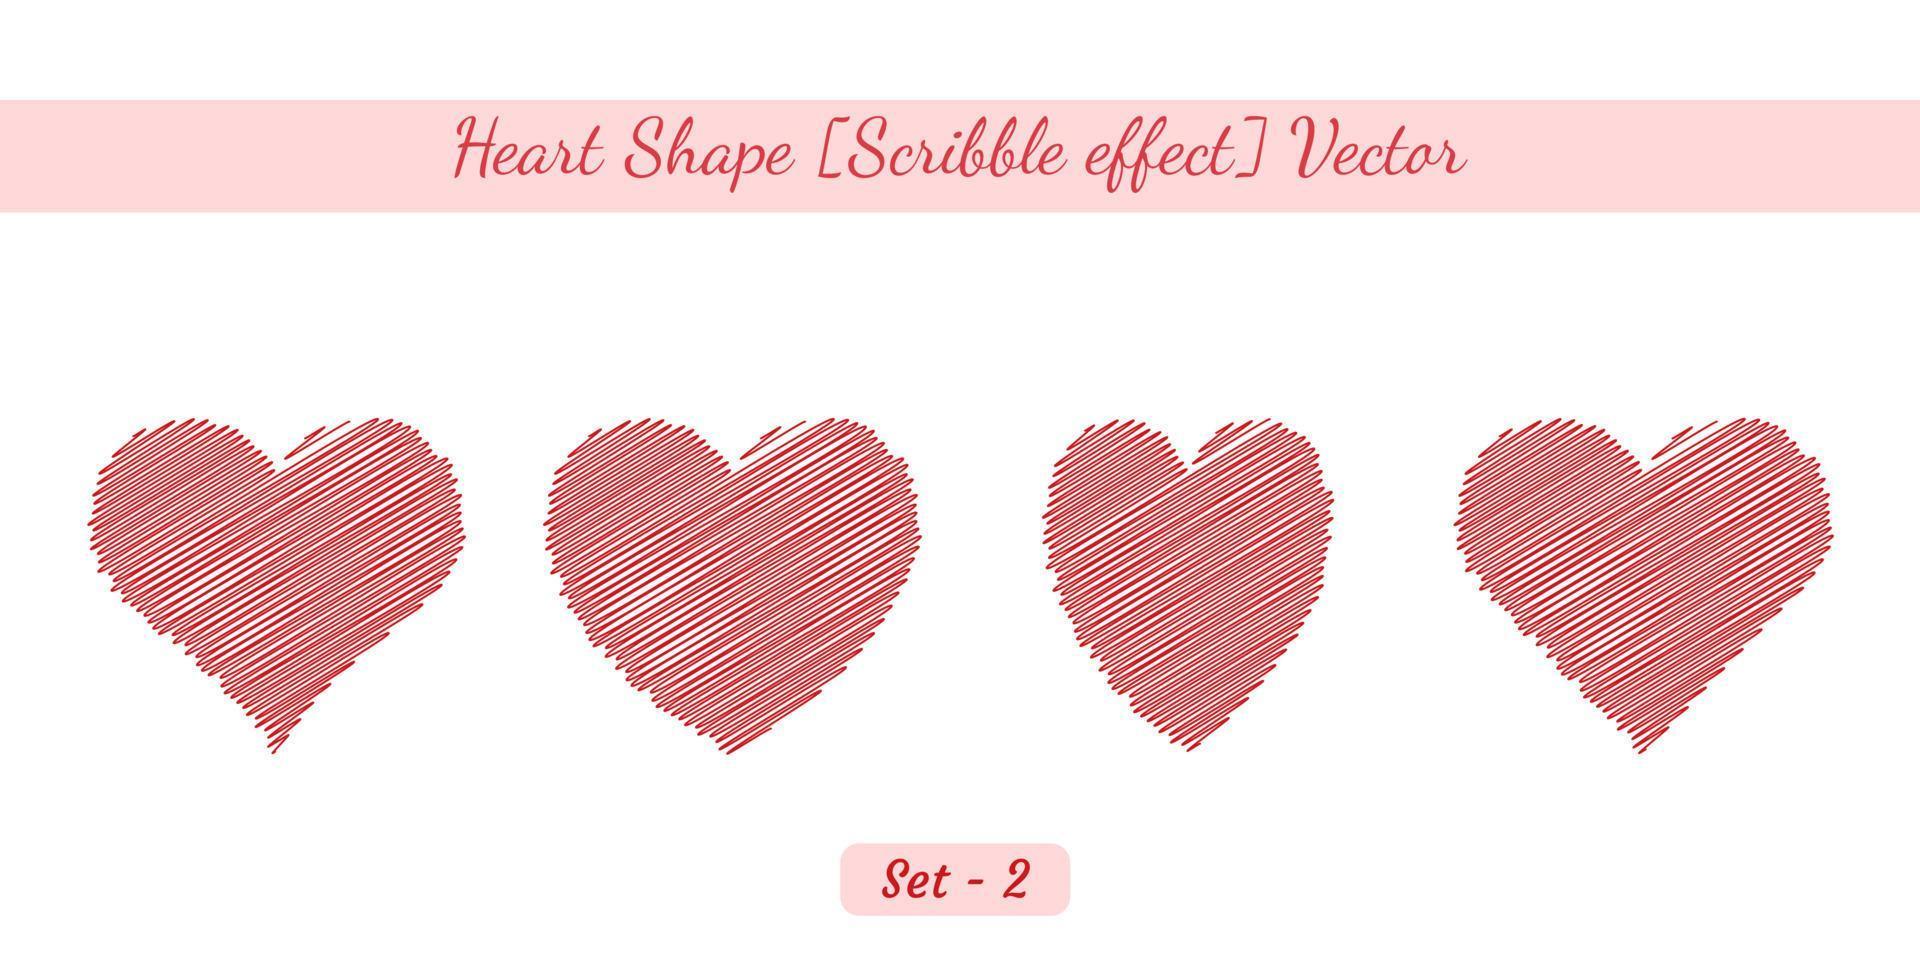 oggetto a forma di cuore con effetto scarabocchio, set di oggetti vettoriali a forma di cuore creato su sfondo bianco.